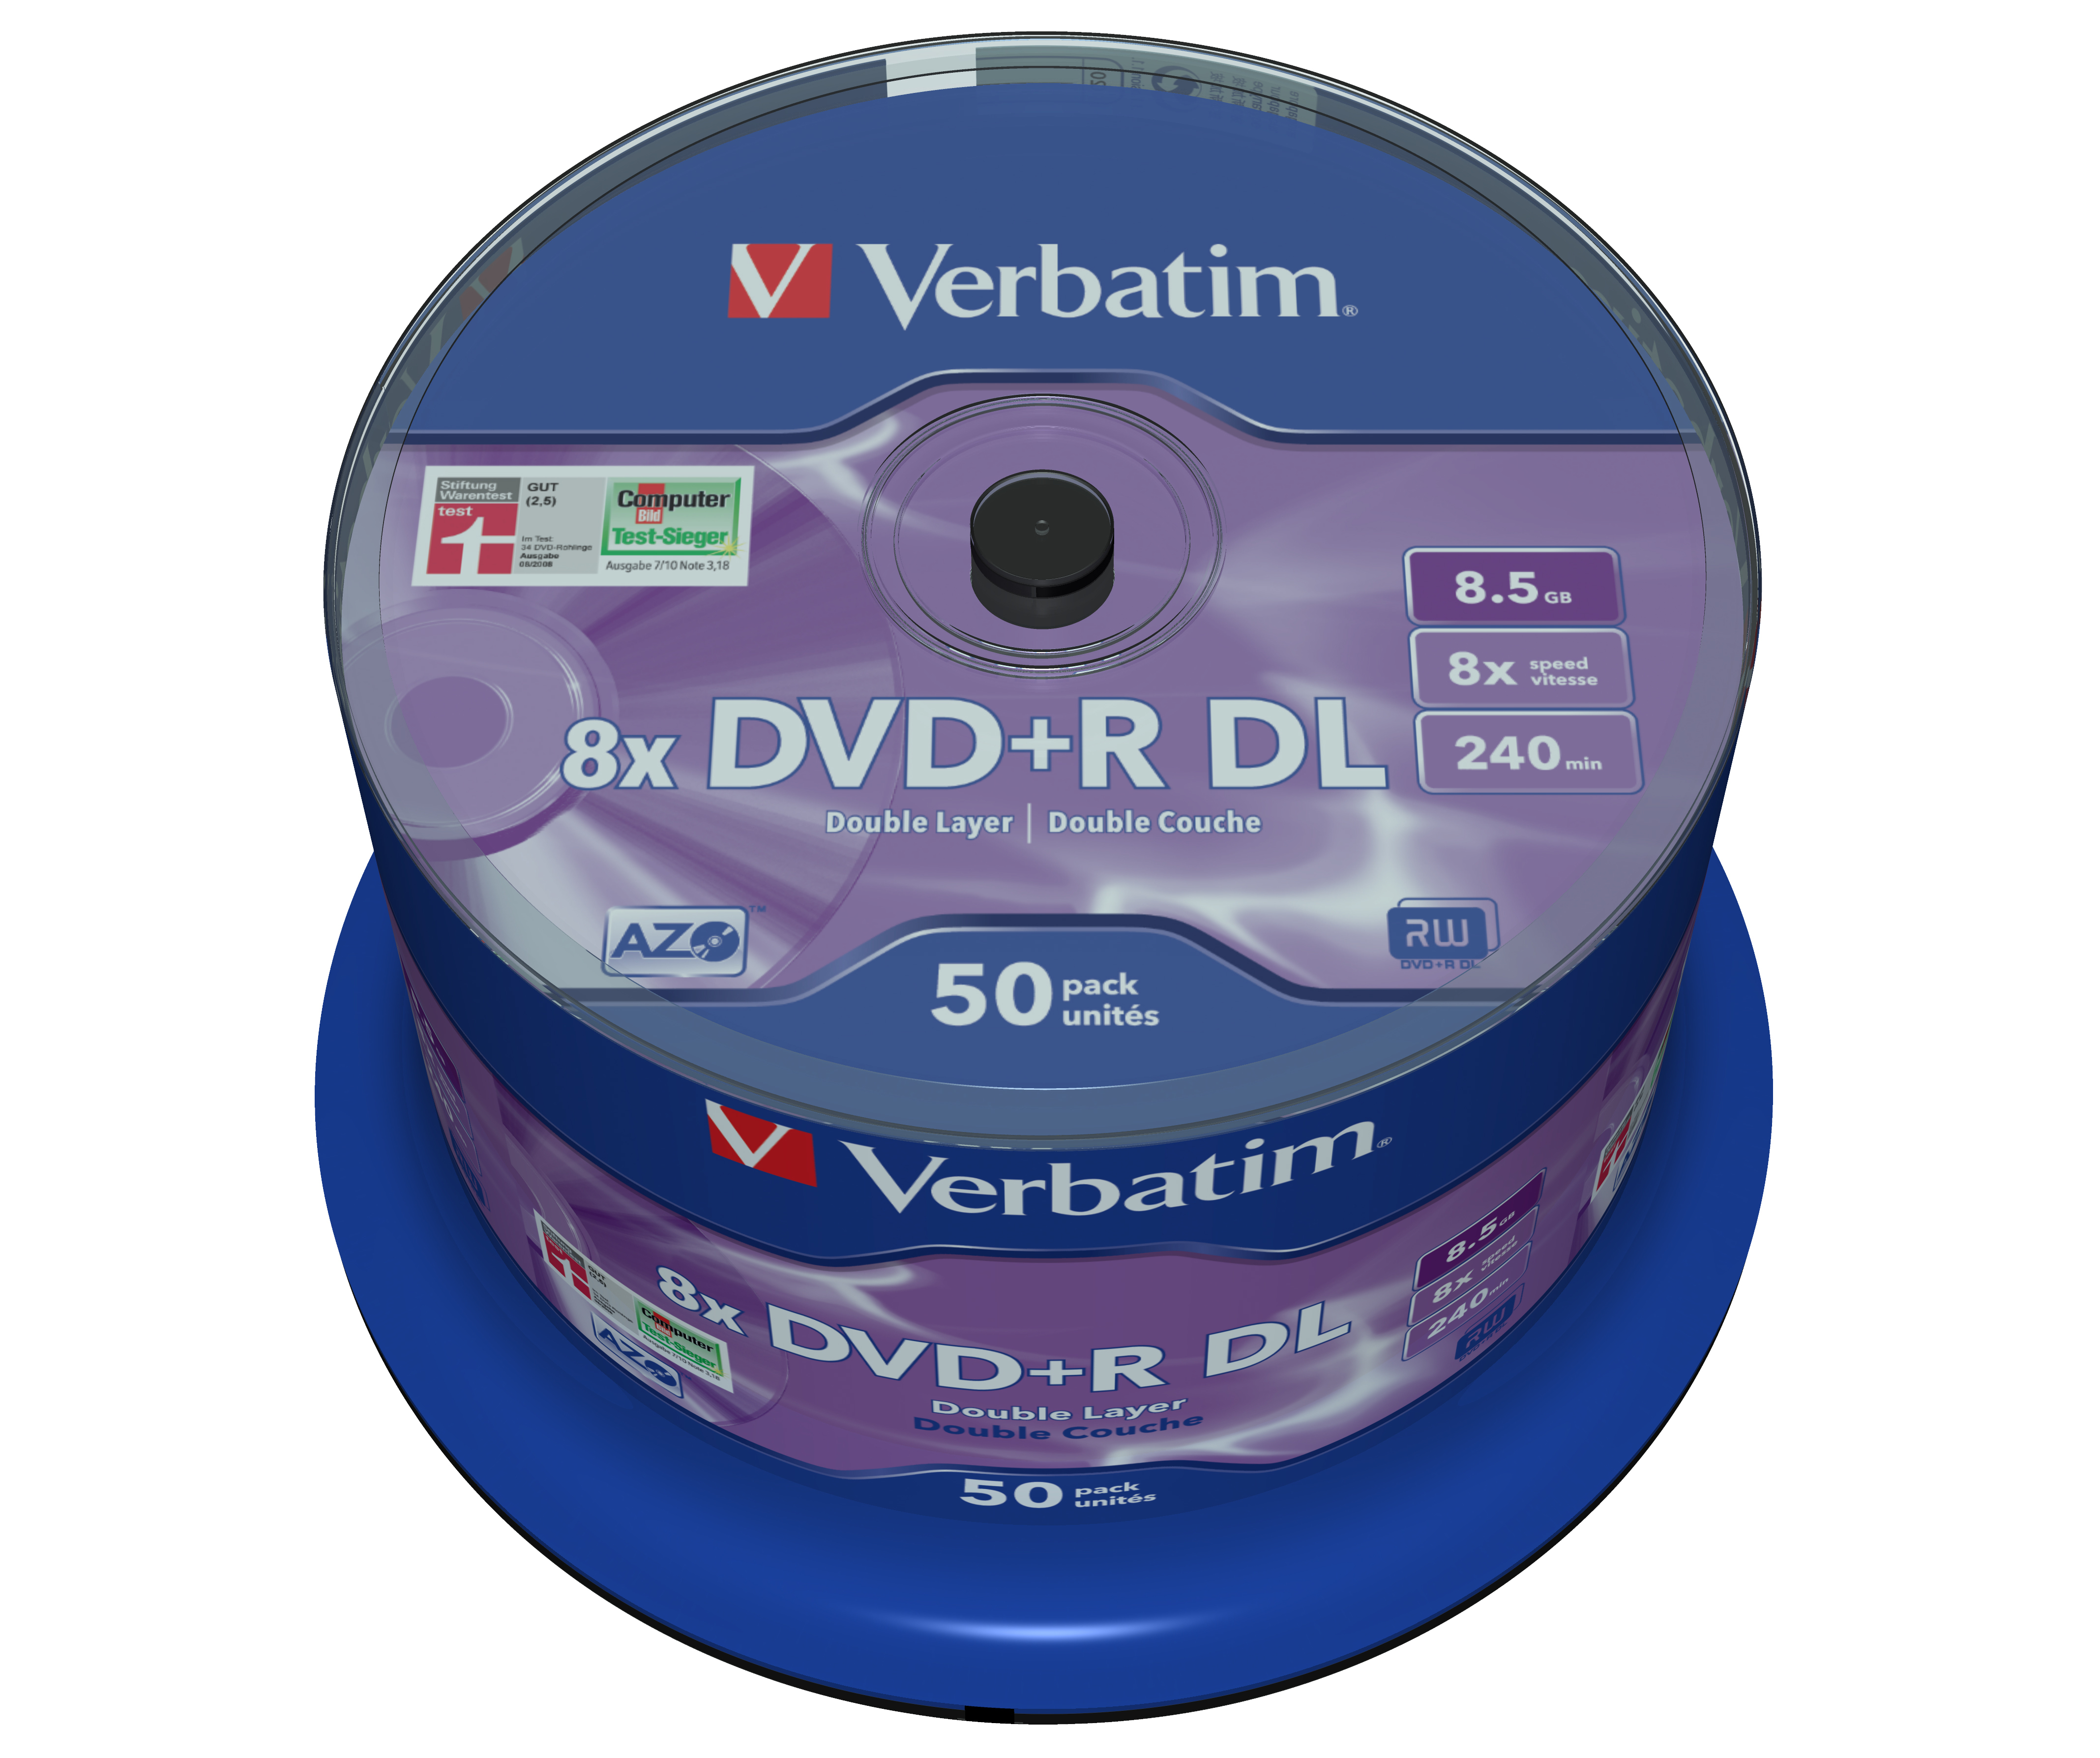 Verbatim 50 x DVD+R DL - 8.5 GB (240 Min.) 8x